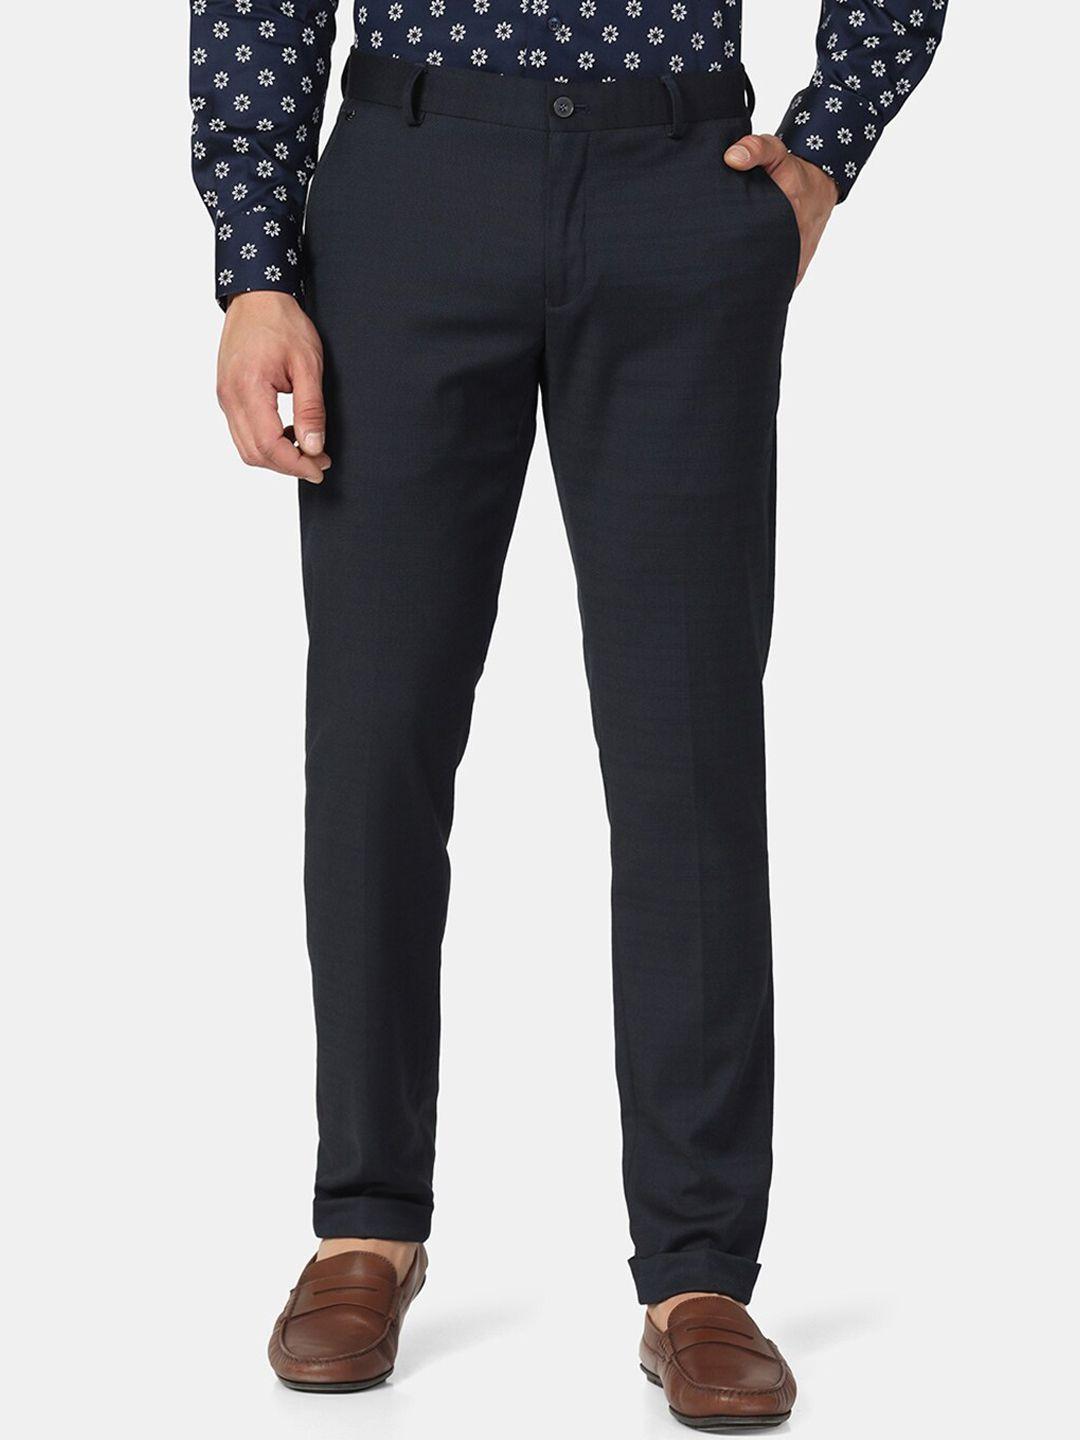 blackberrys-men-skinny-fit-low-rise-phoenix-fit-chinos-trousers